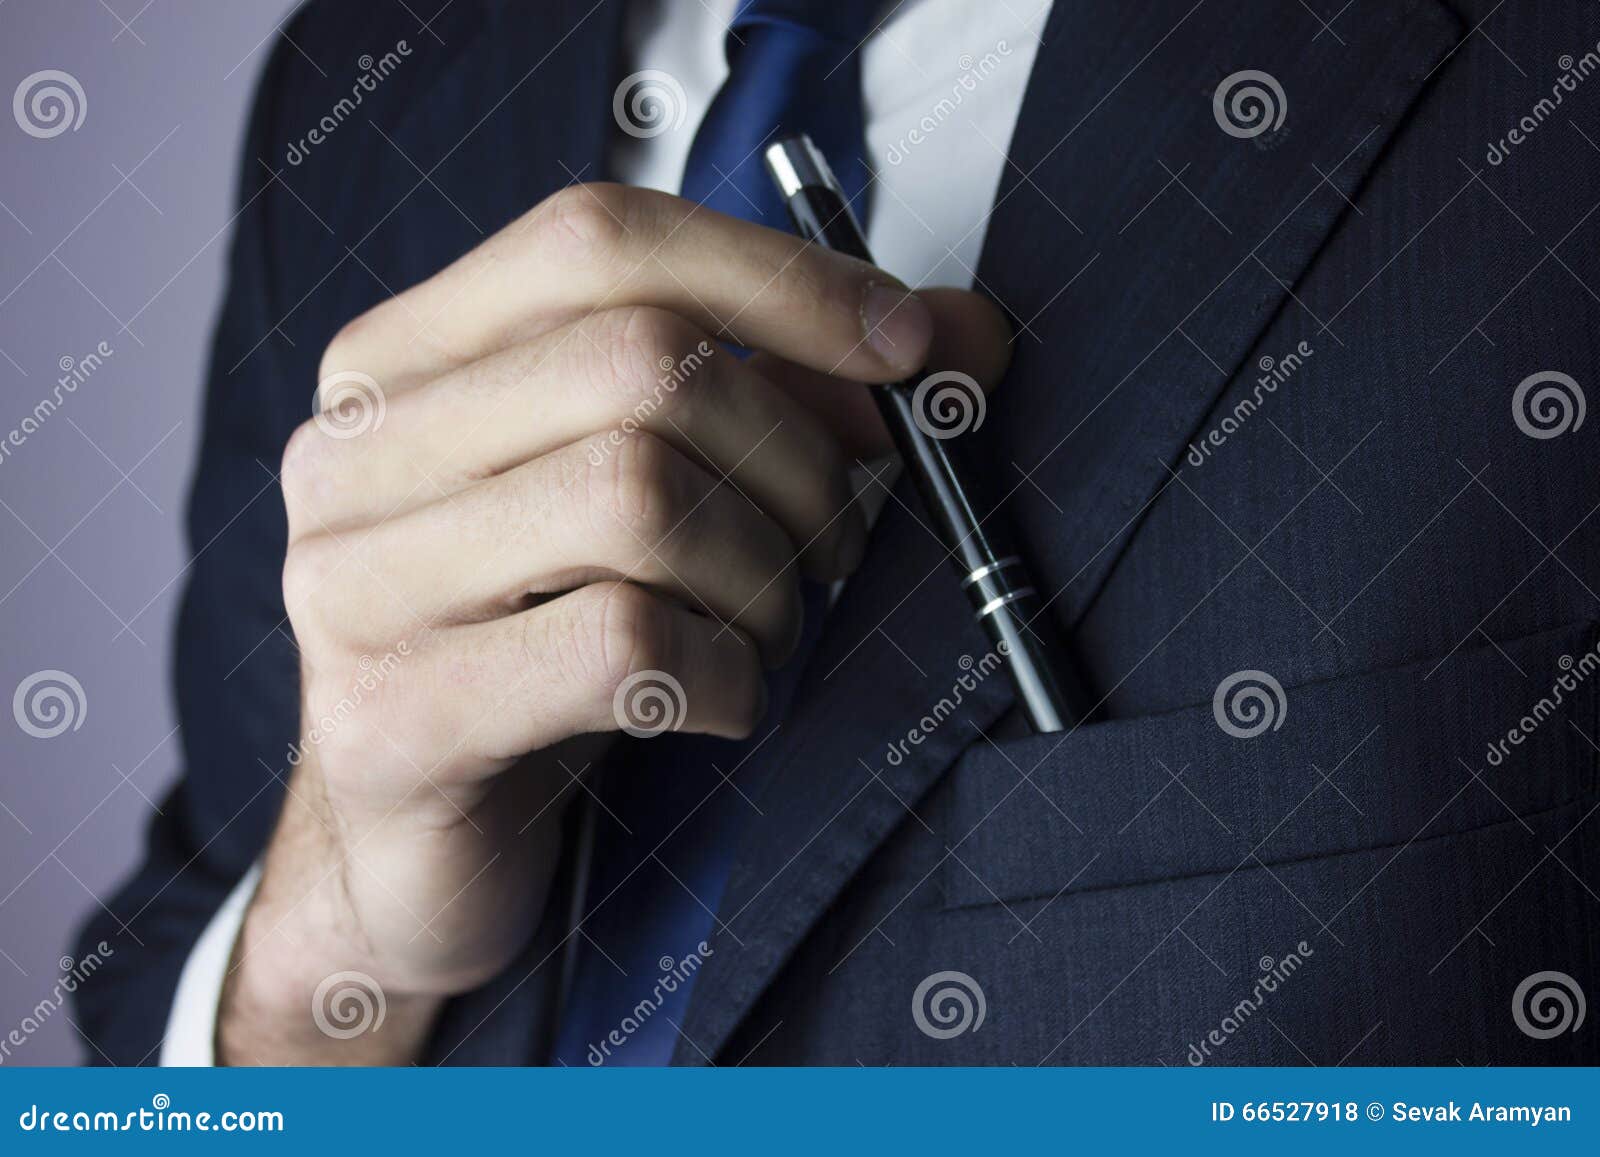 Pen man. Ручка в пиджаке. Ручка в кармане пиджака. Авторучка в кармане. Мужчина с ручкой.